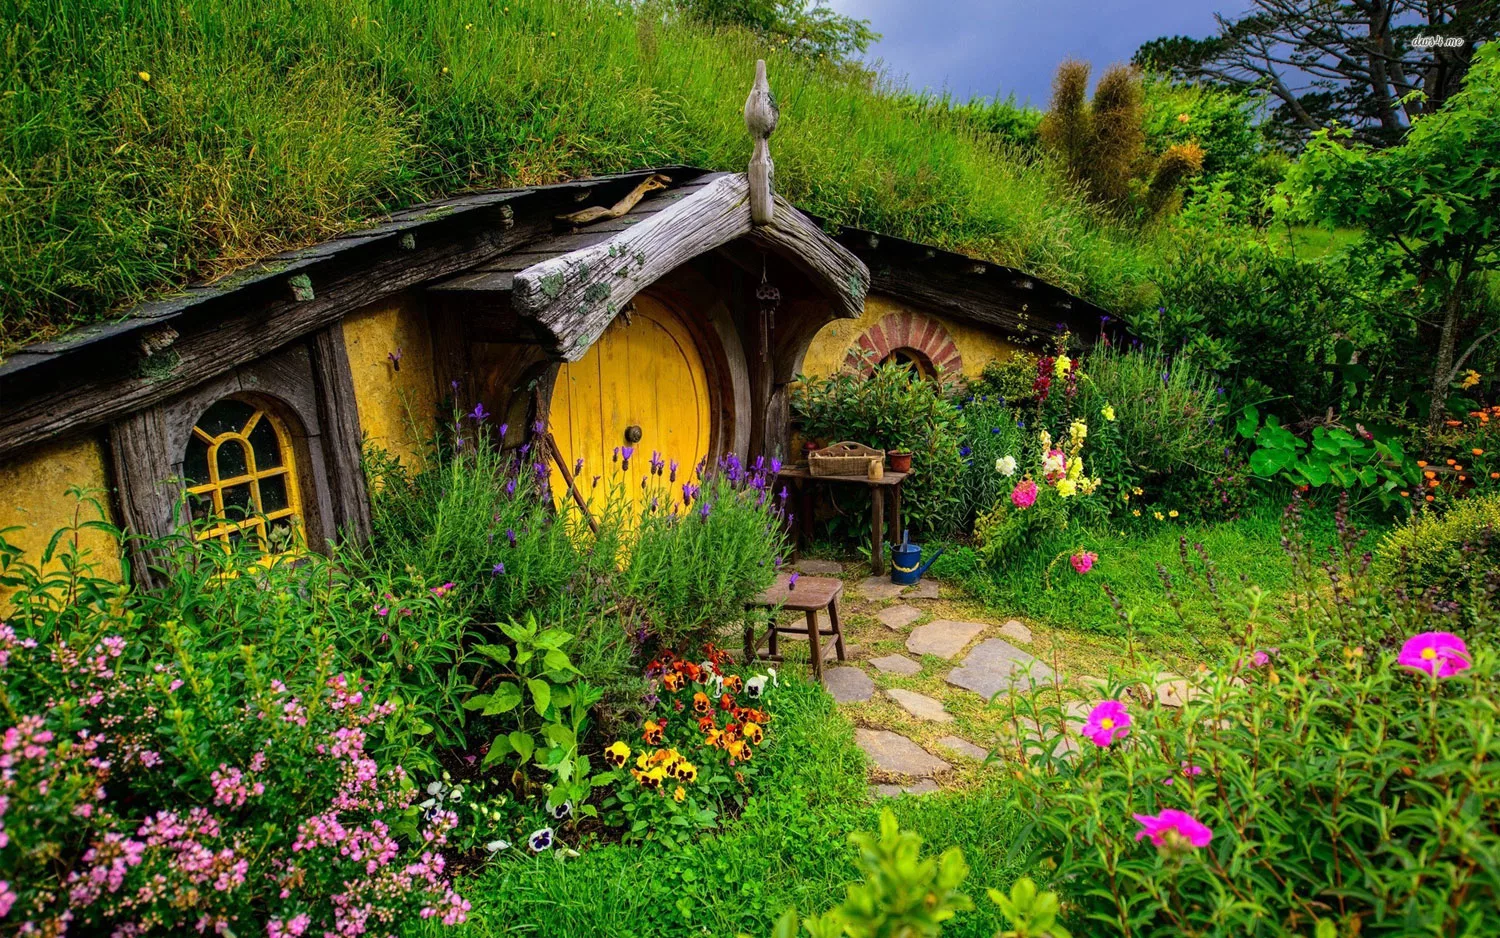 Foto della casa in stile Hobbit realizzata in Nuova Zelanda